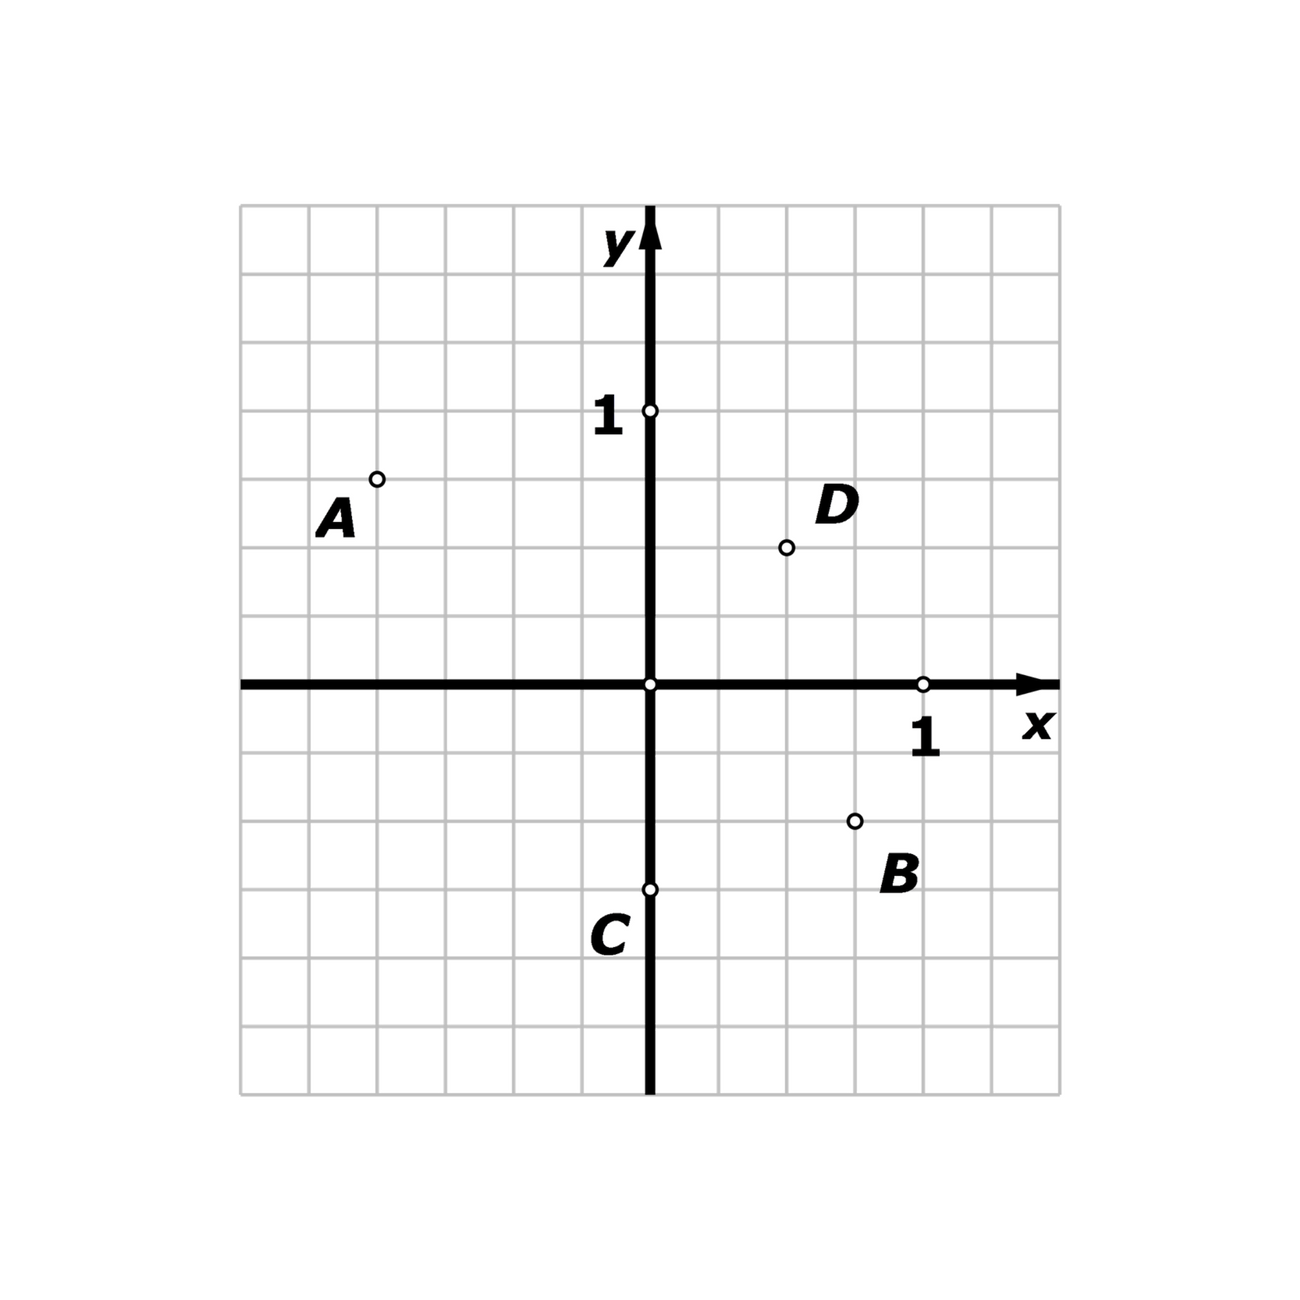 Slika prikazuje pravokutni koordinatni sustav u koji su ucrtane točke A, B, C i D.